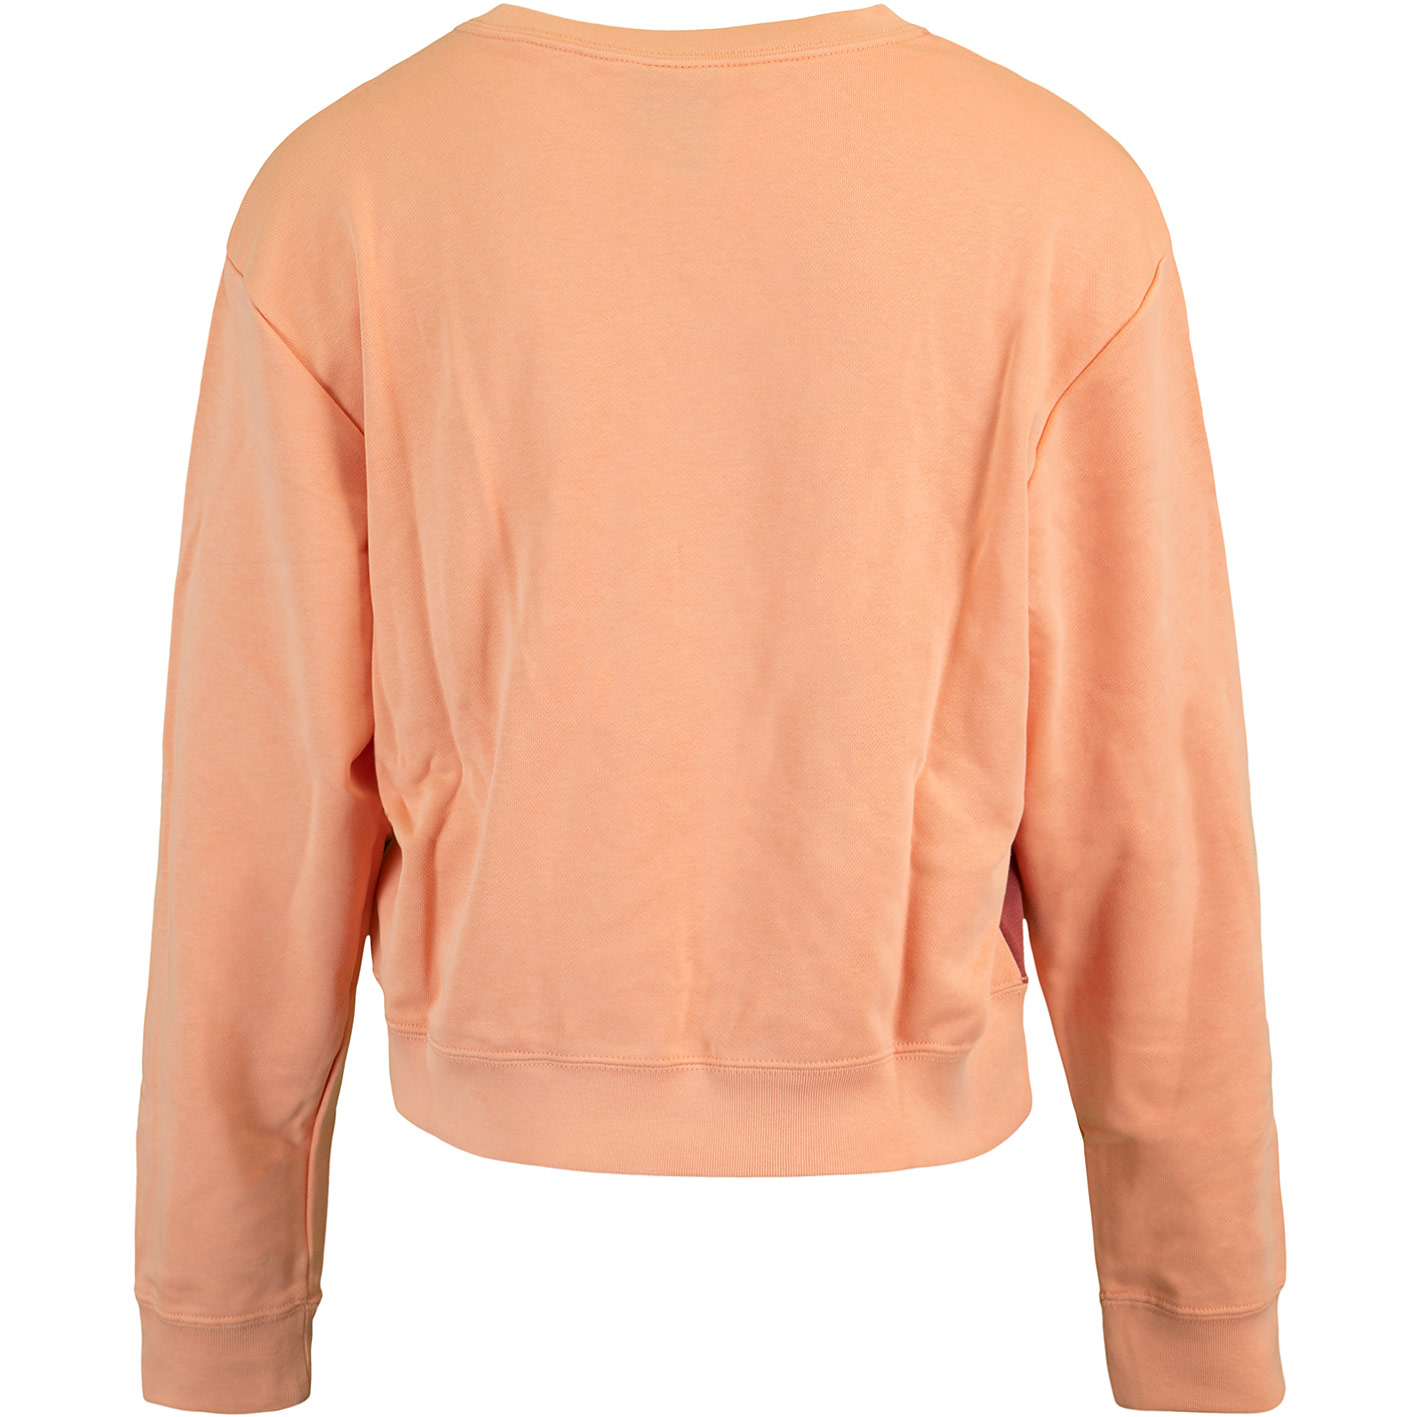 ☆ Nike Heritage Fleece Damen Sweatshirt apricot - hier bestellen!